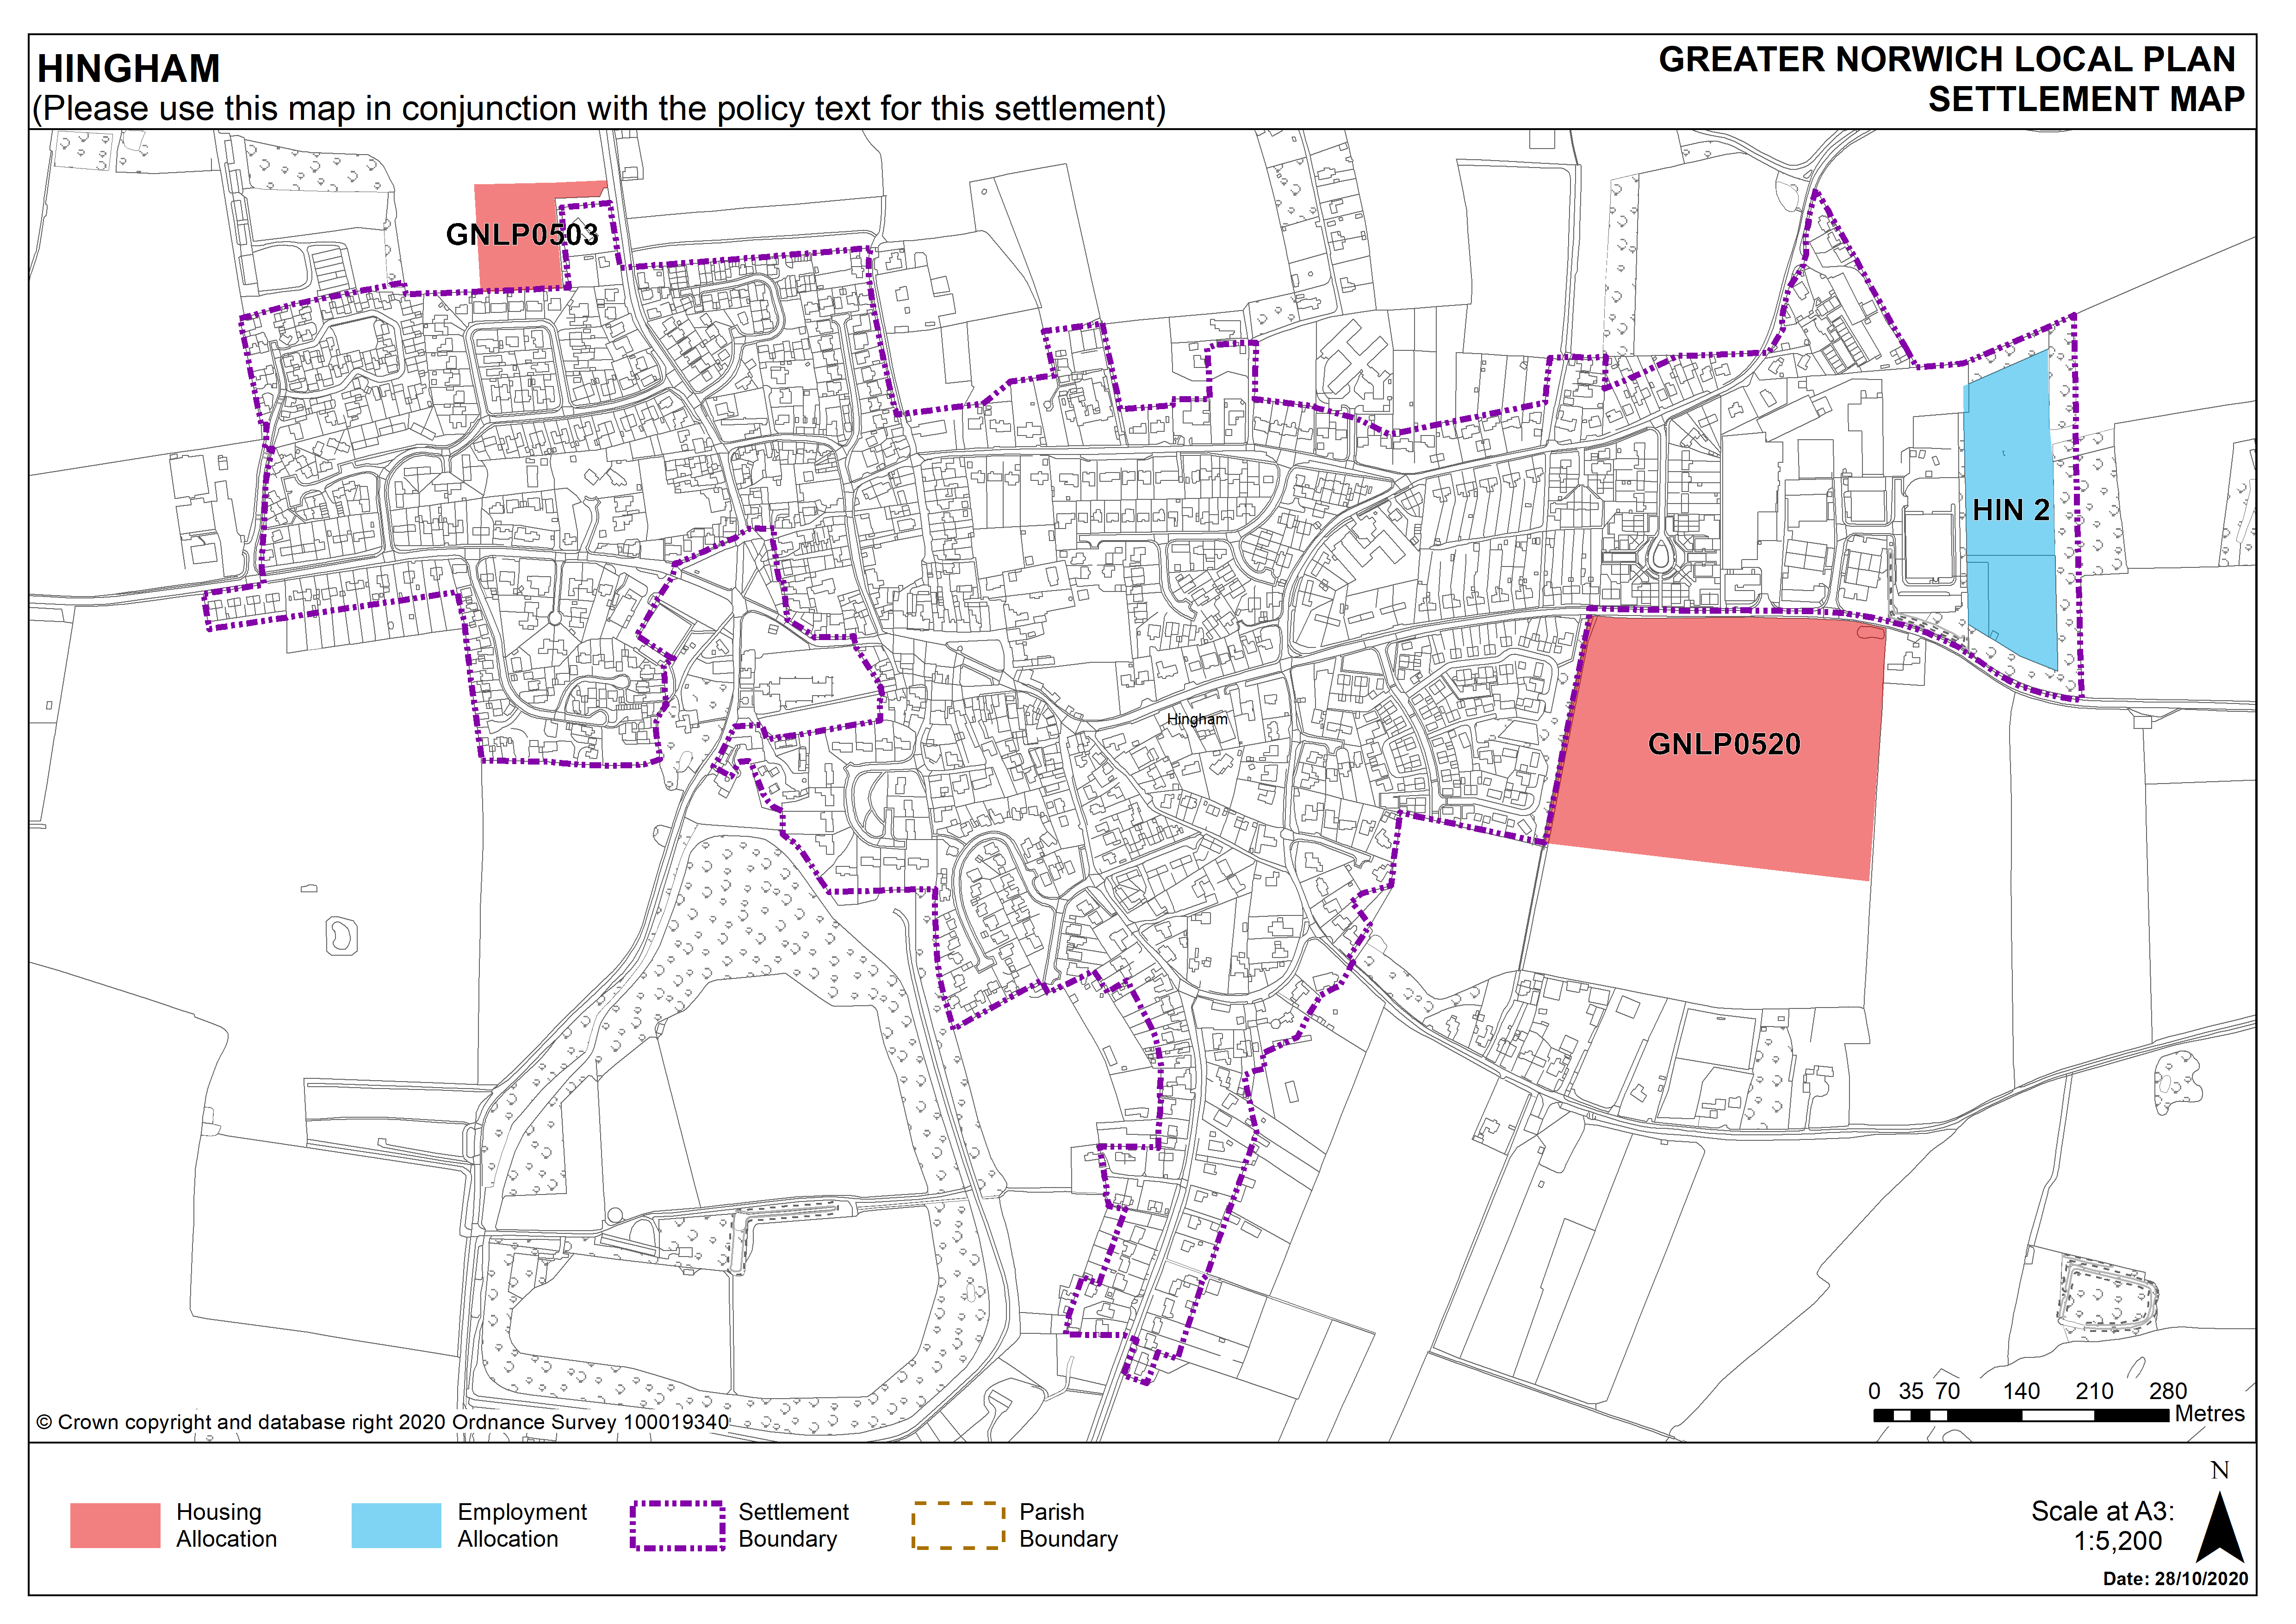 Hingham Settlement Map